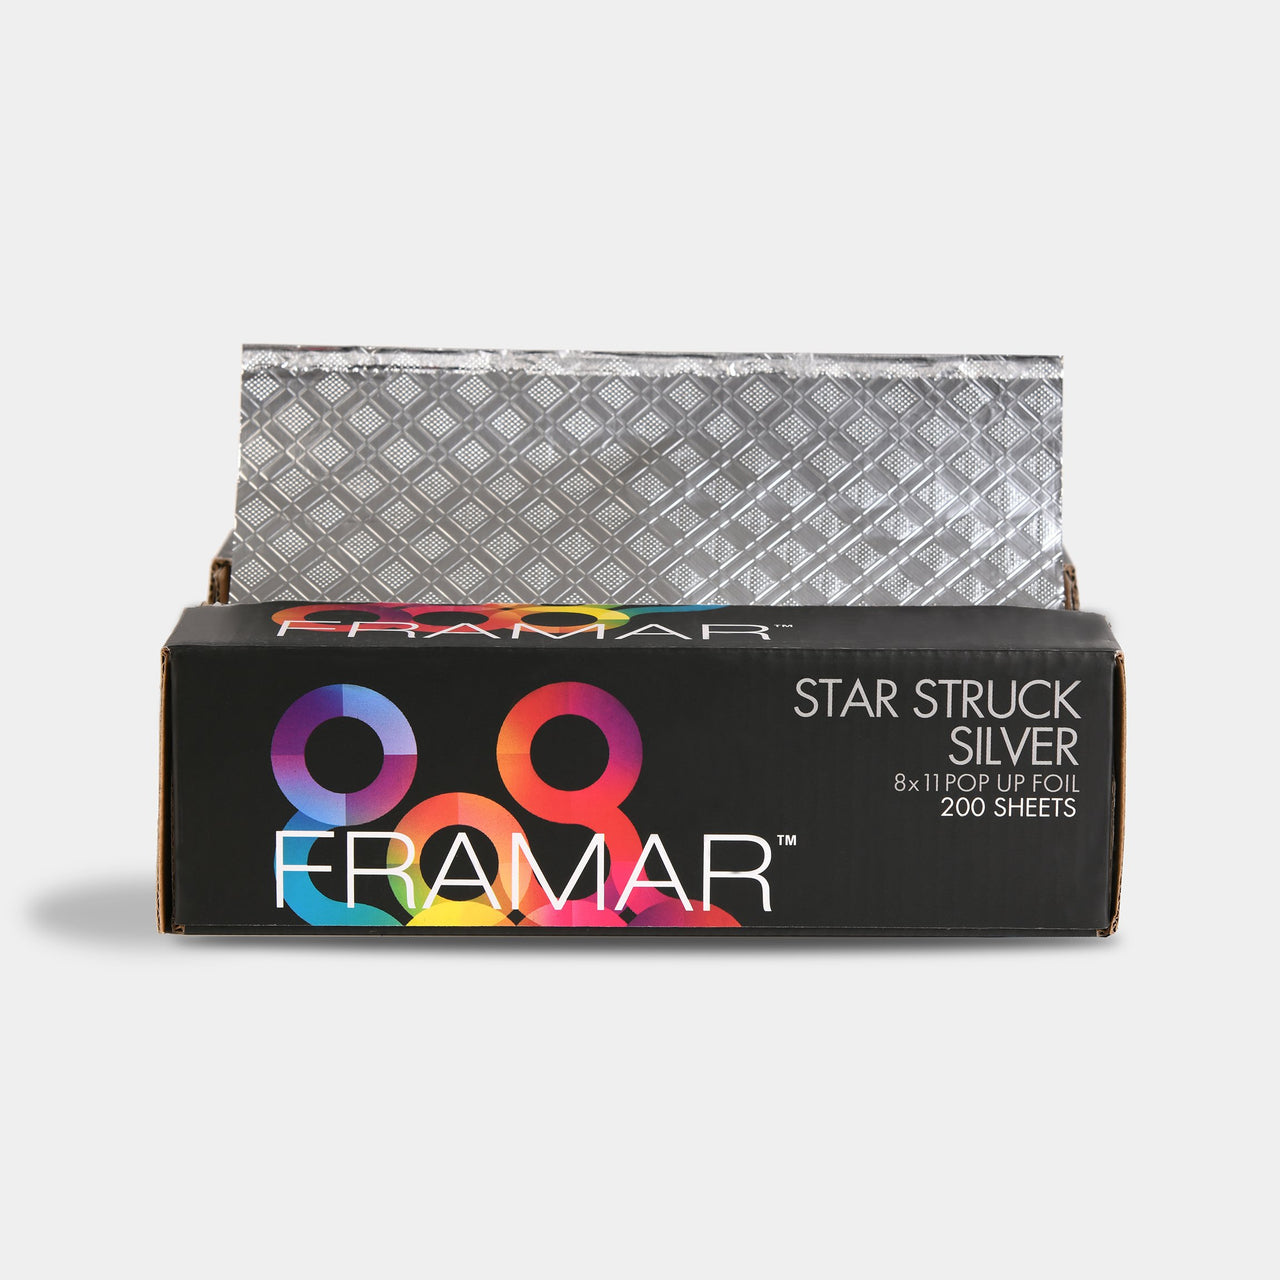 Framar Pop Up-Star Struck Silver 8x11